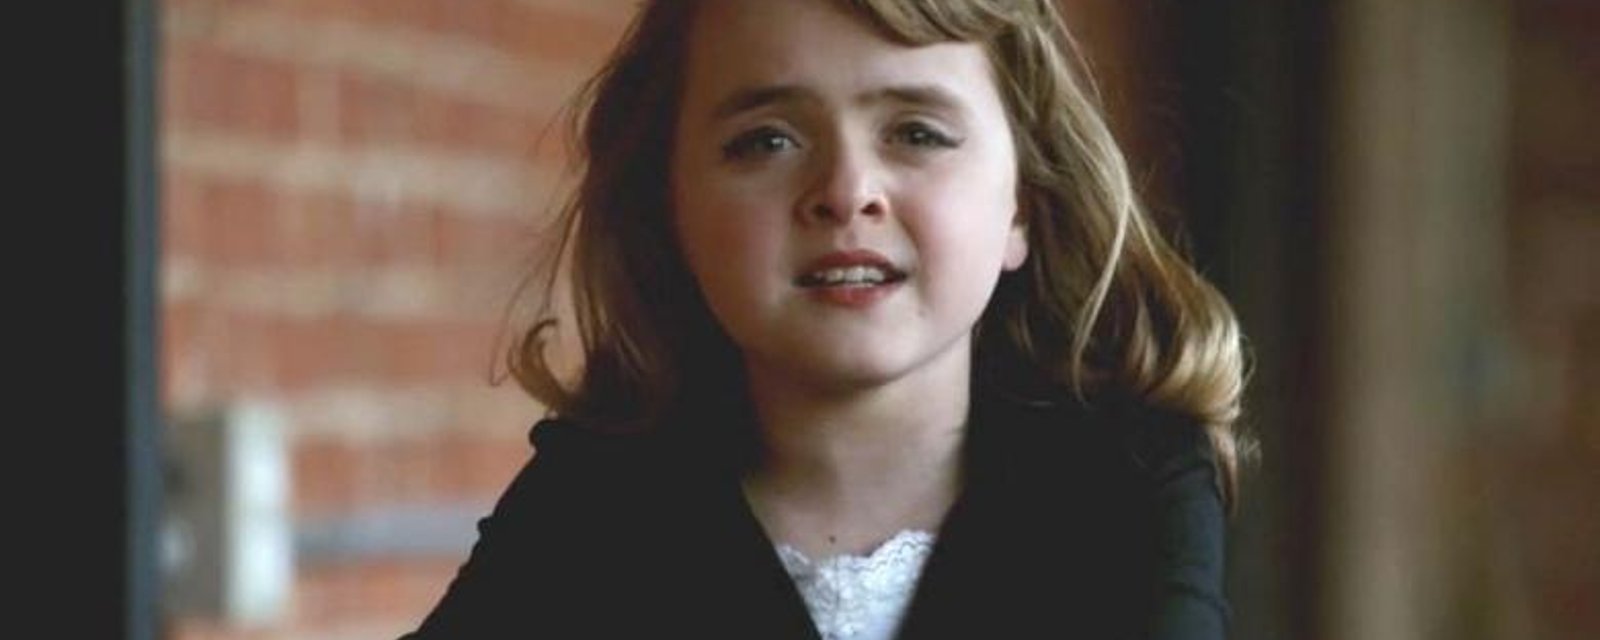 À 10 ans, elle interprète Rolling Deep d'Adele à la PERFECTION!